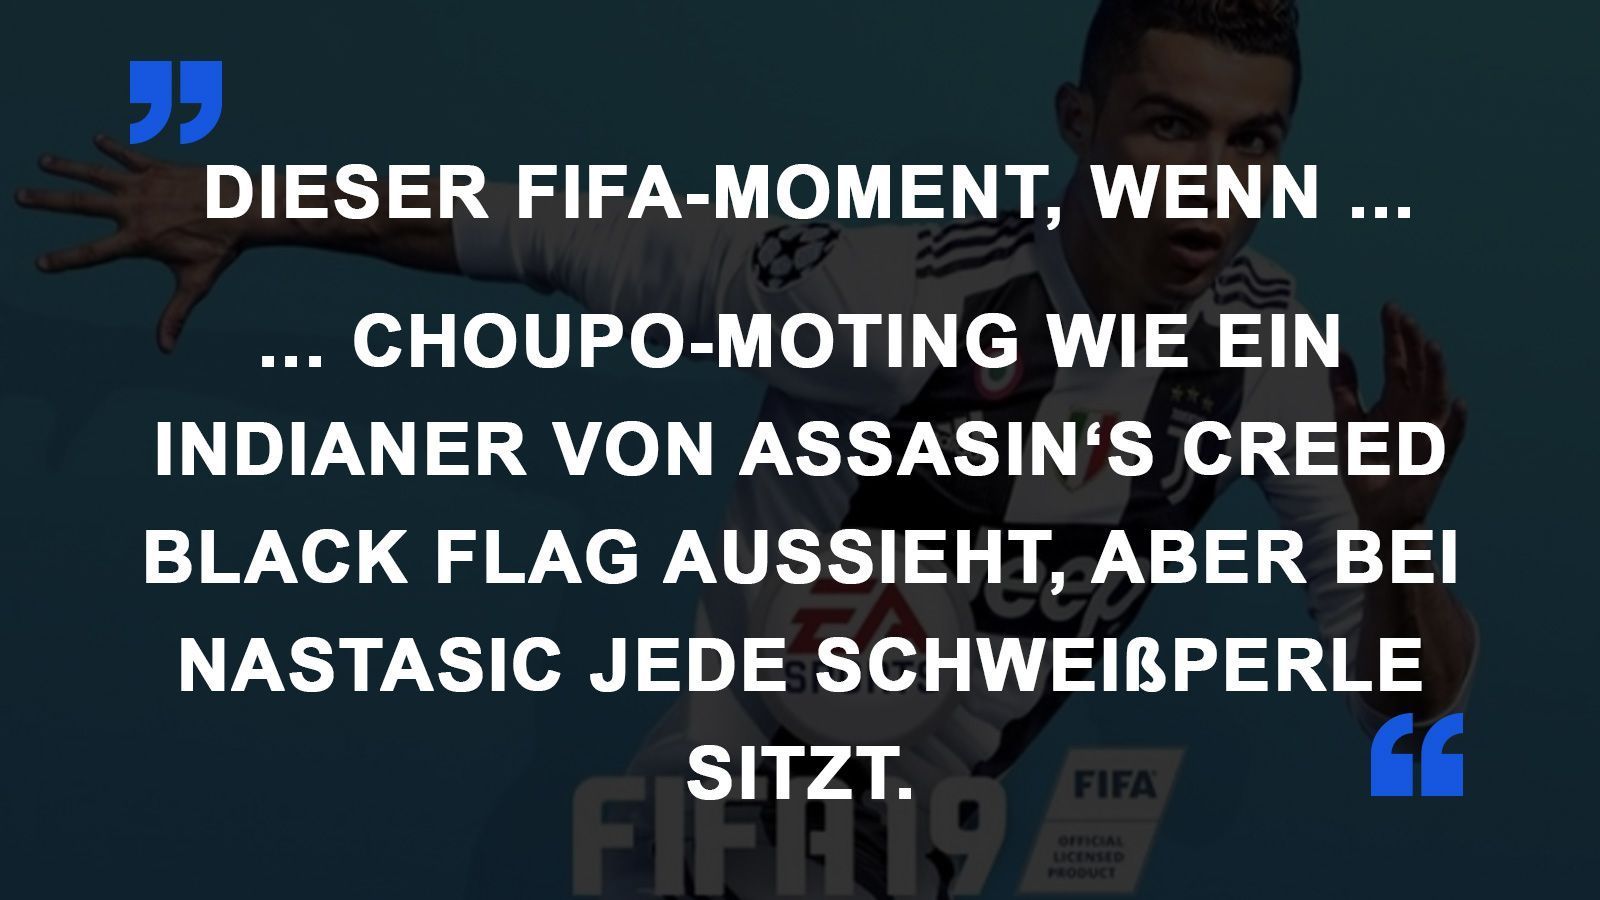 
                <strong>FIFA Momente Spieler Aussehen</strong><br>
                
              